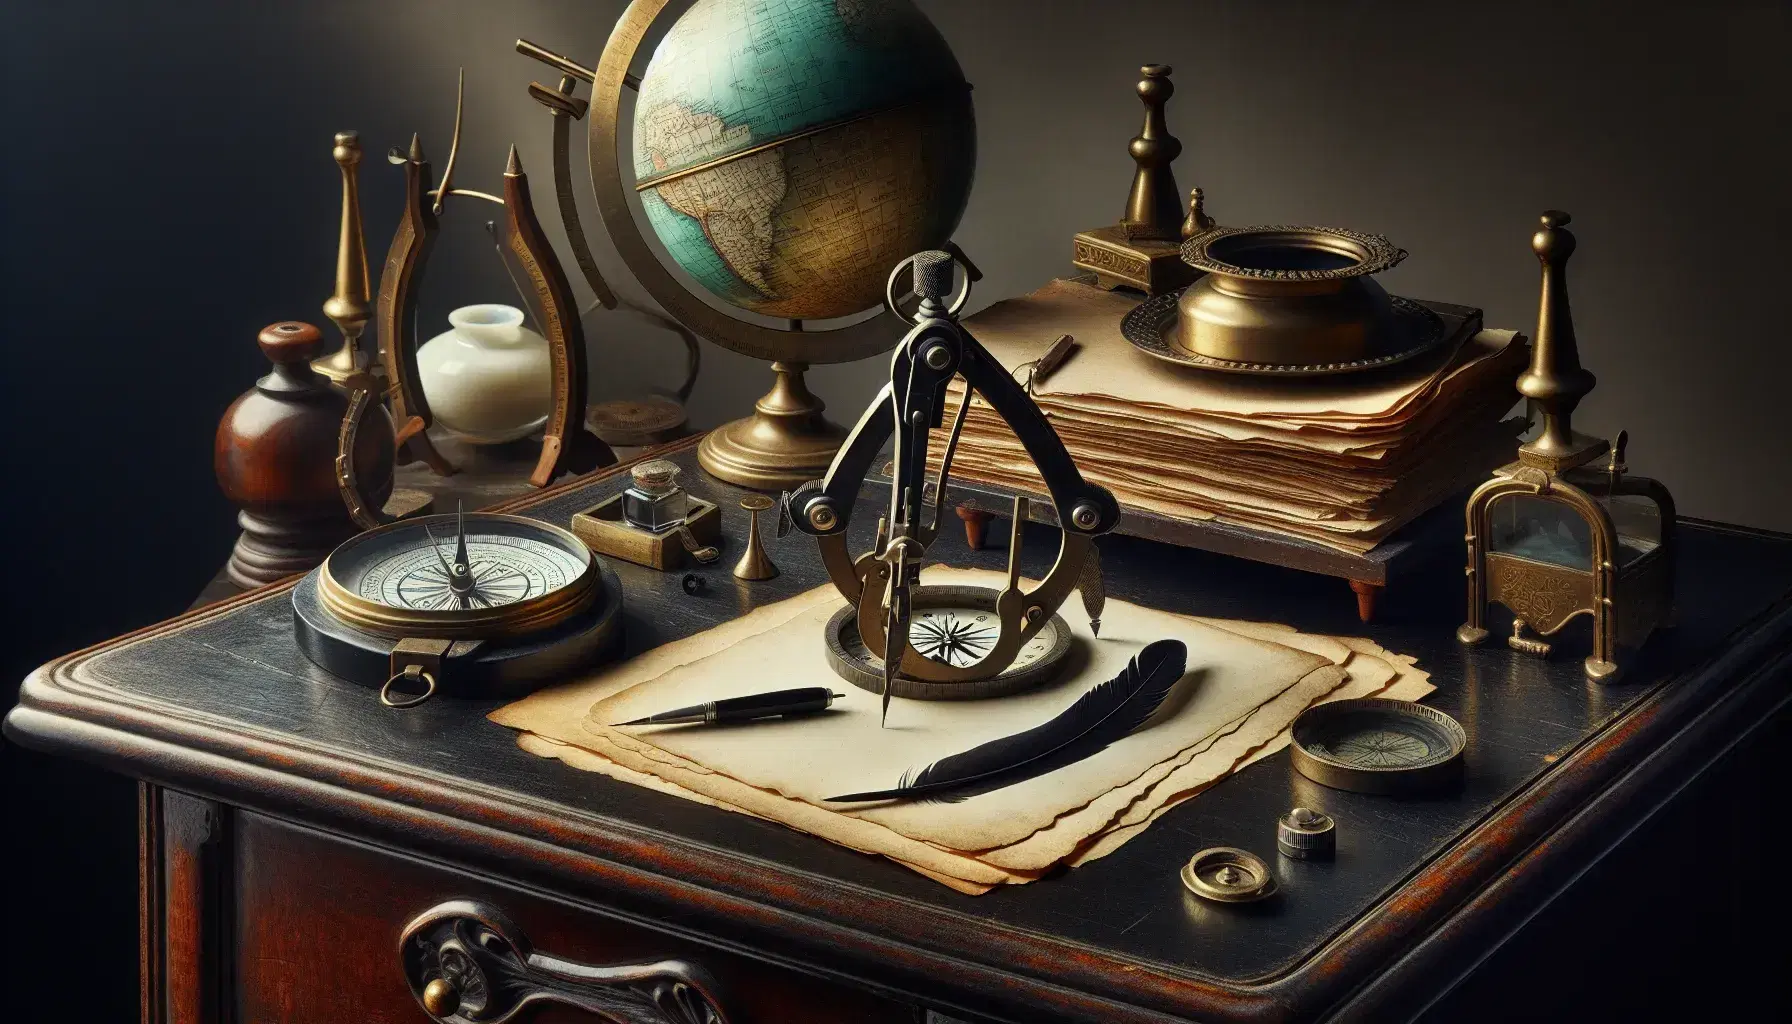 Escritorio antiguo de madera oscura con compás metálico, papeles envejecidos, pluma negra en tintero y sextante de latón junto a un globo terráqueo.